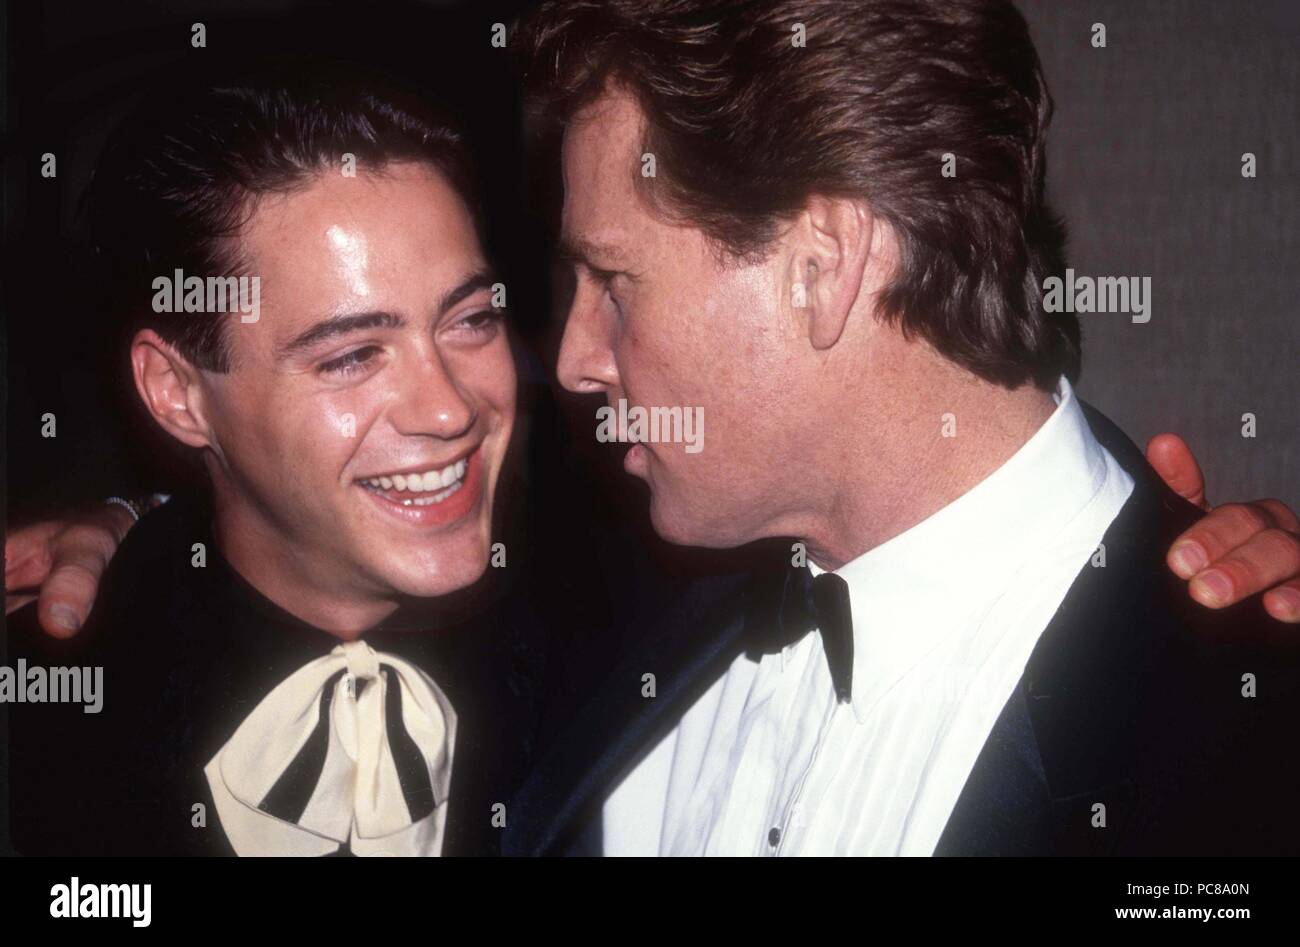 Robert Downey Jr. und Ryan O'Neal 1989 Foto von Adam Schädel/PHOTOlink.net/MediaPunch Stockfoto